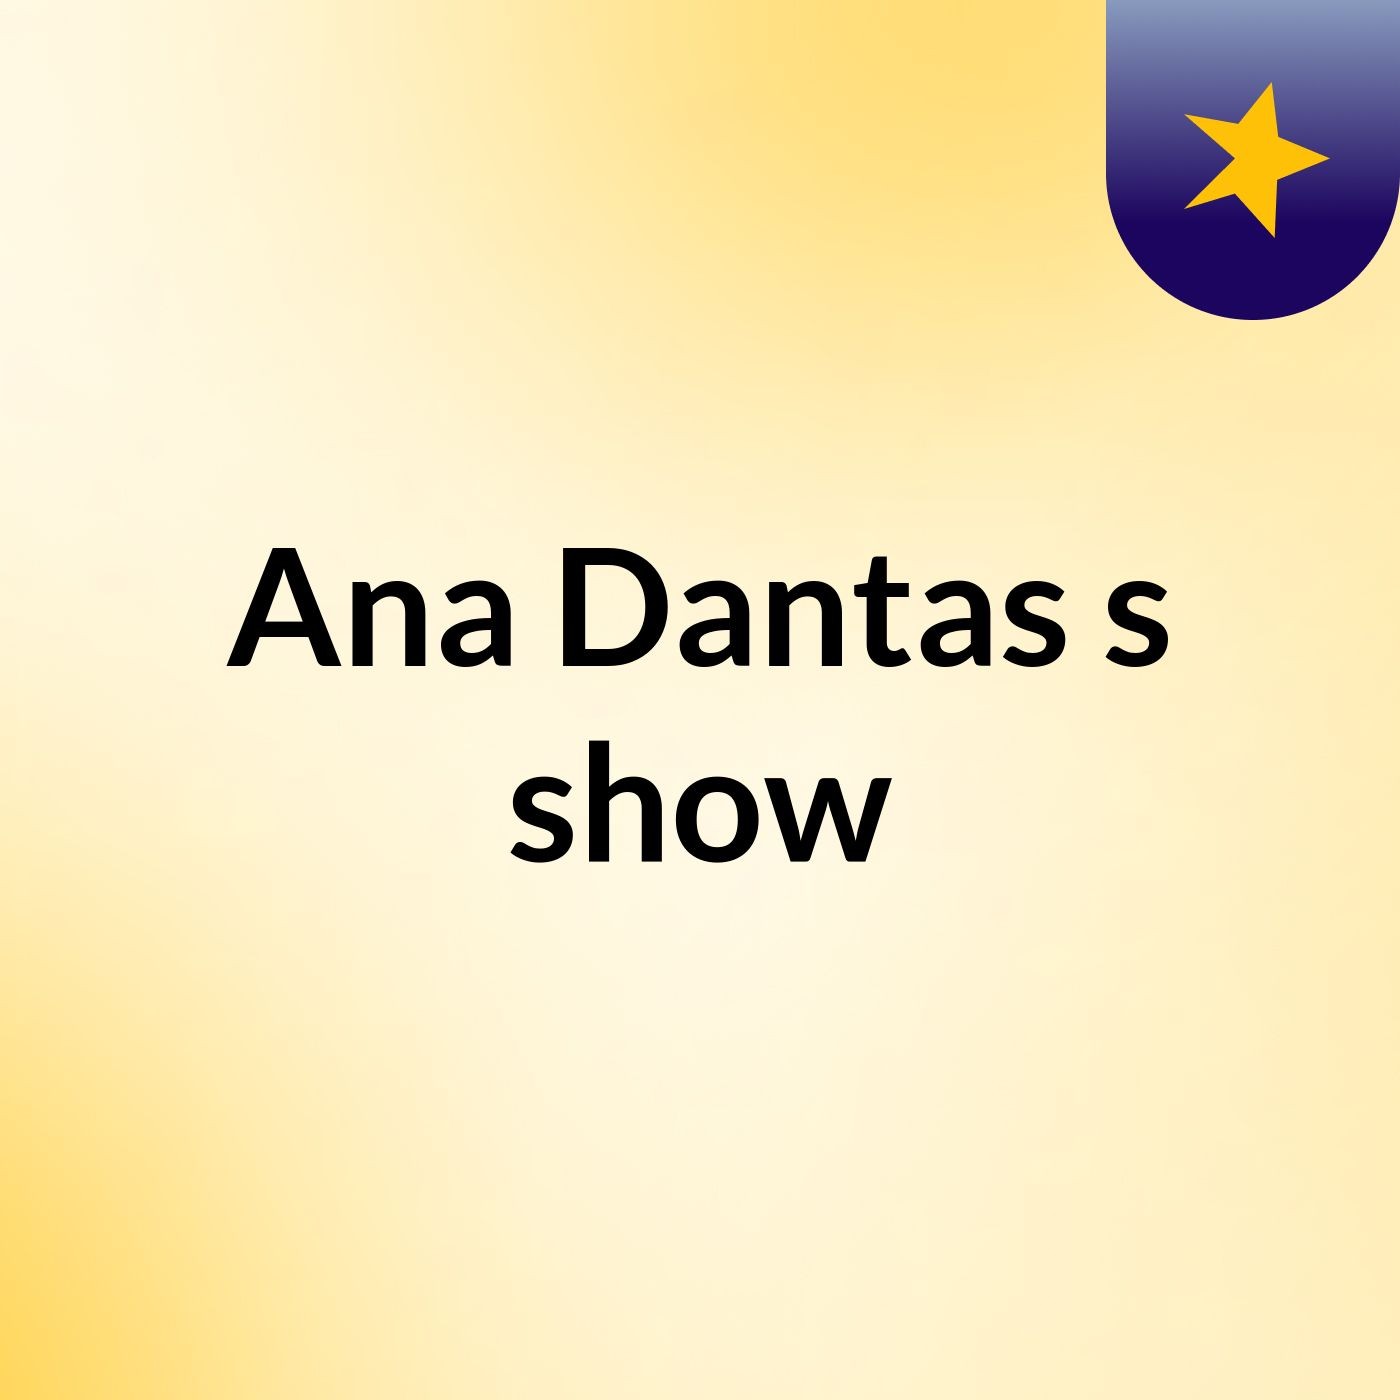 Ana Dantas's show